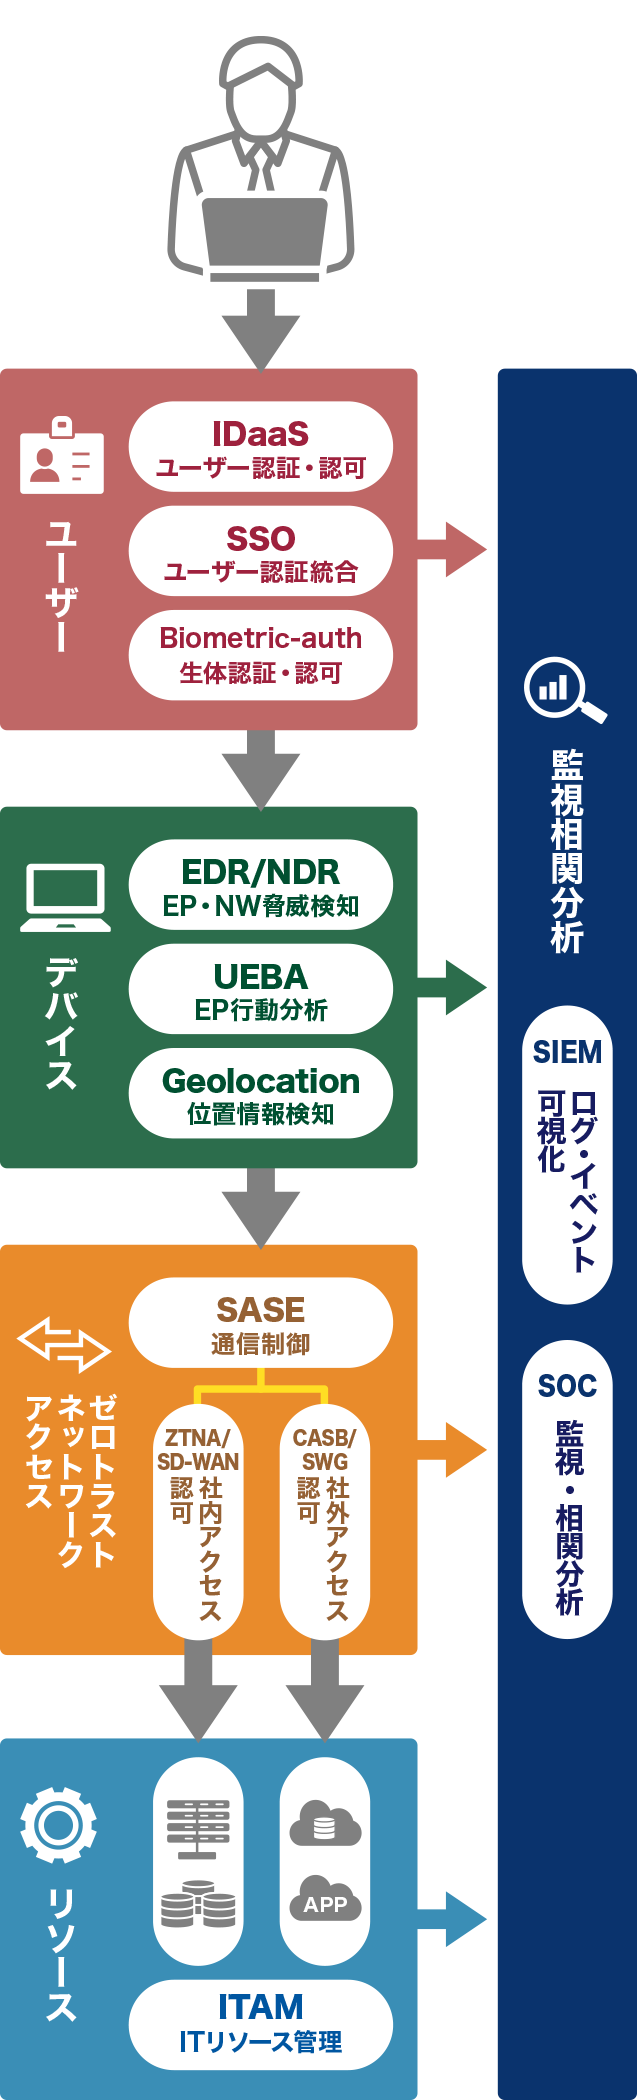 
					ユーザー
					デバイス
					ゼロトラスト ネットワークアクセス
					リソース
					監視相関分析
					SIEM
					ログ・イベント可視化
					SOC
					監視・相関分析				
				